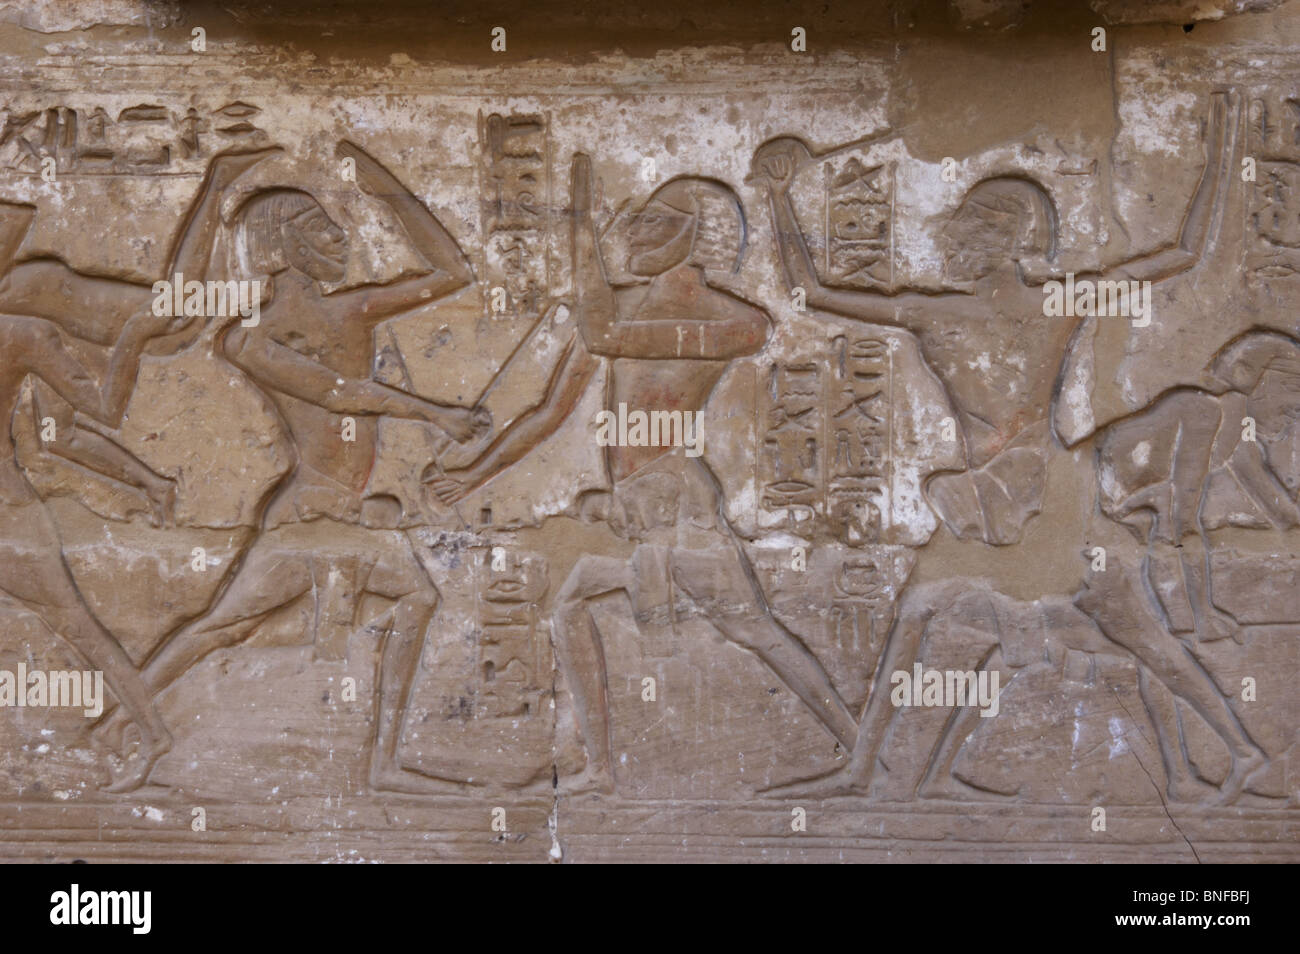 Tempel des RamsesIII. Fechten Kampf mit Stöcken. Die Kämpfer tragen Schutzmasken. Ägypten. Stockfoto